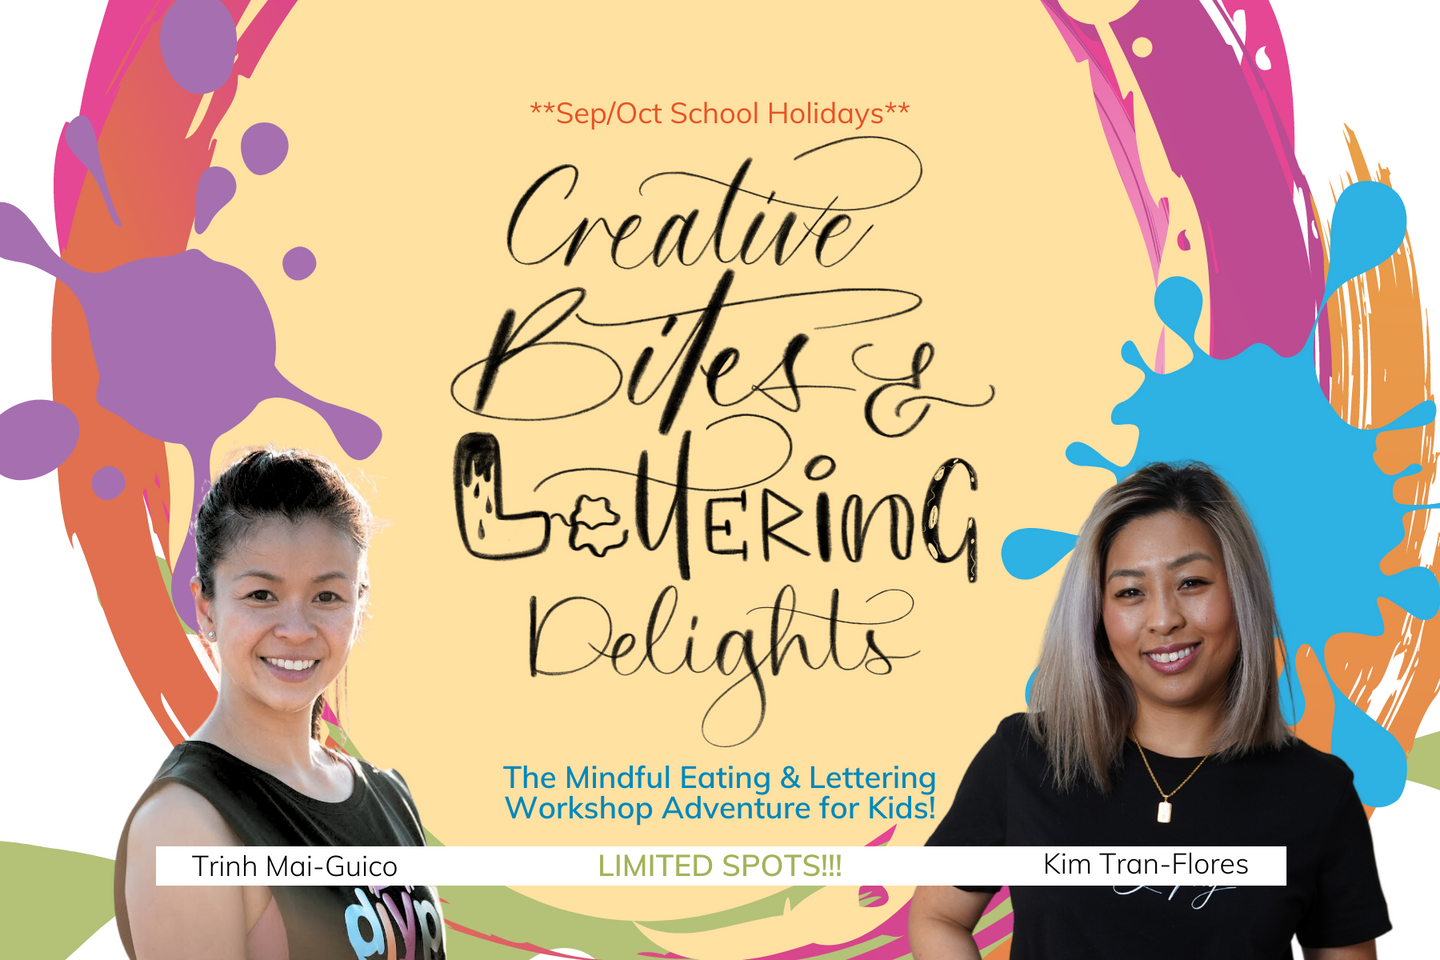 Creative Bites & Lettering Delights Kids Workshop